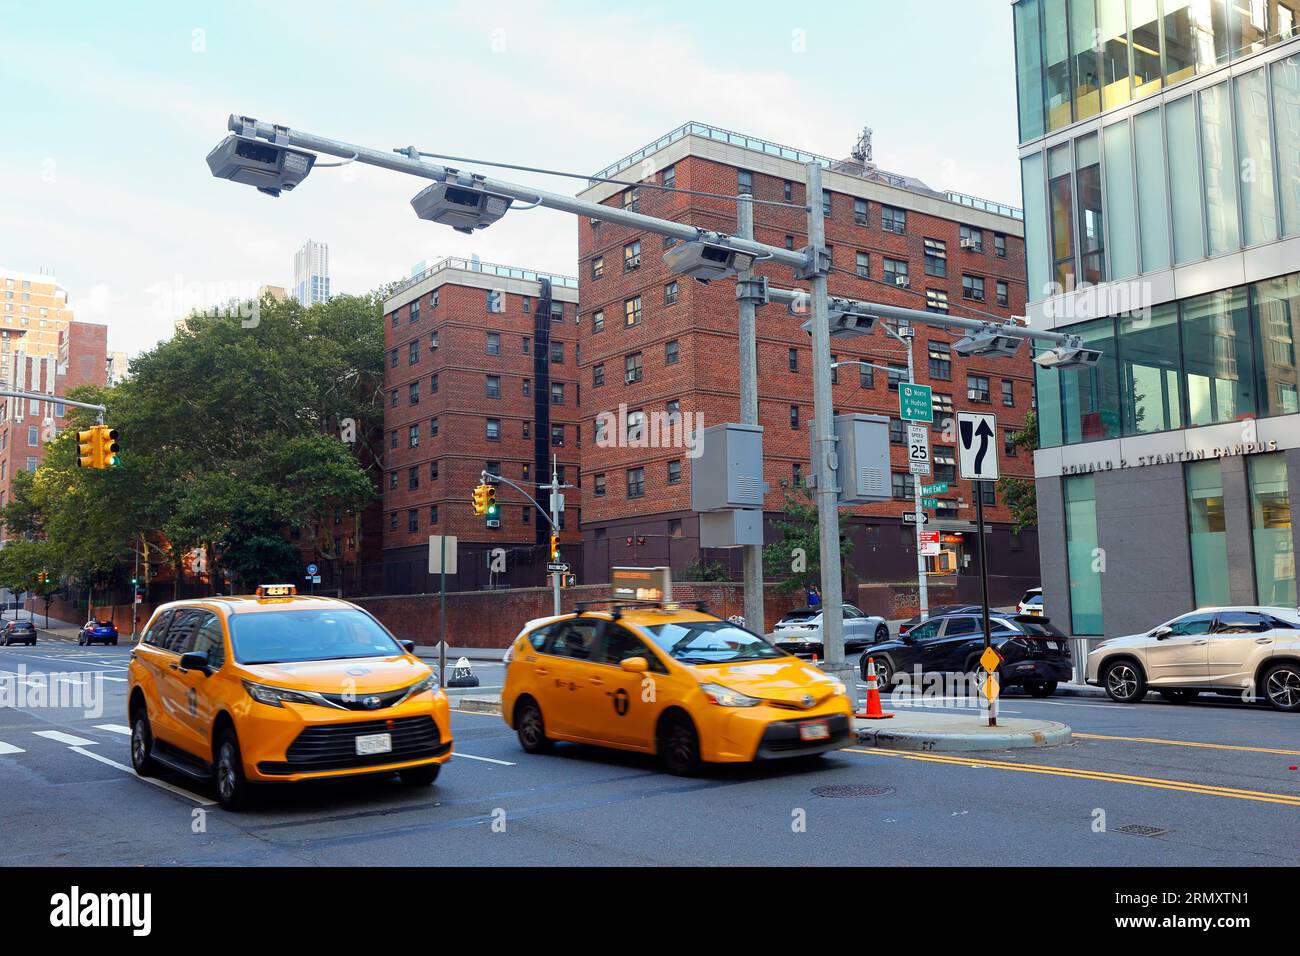 Deux NYC Yellow taxis passent par un scanner de péage de péage de congestion sur West End Ave dans l'Upper West Side de Manhattan, New York. Banque D'Images